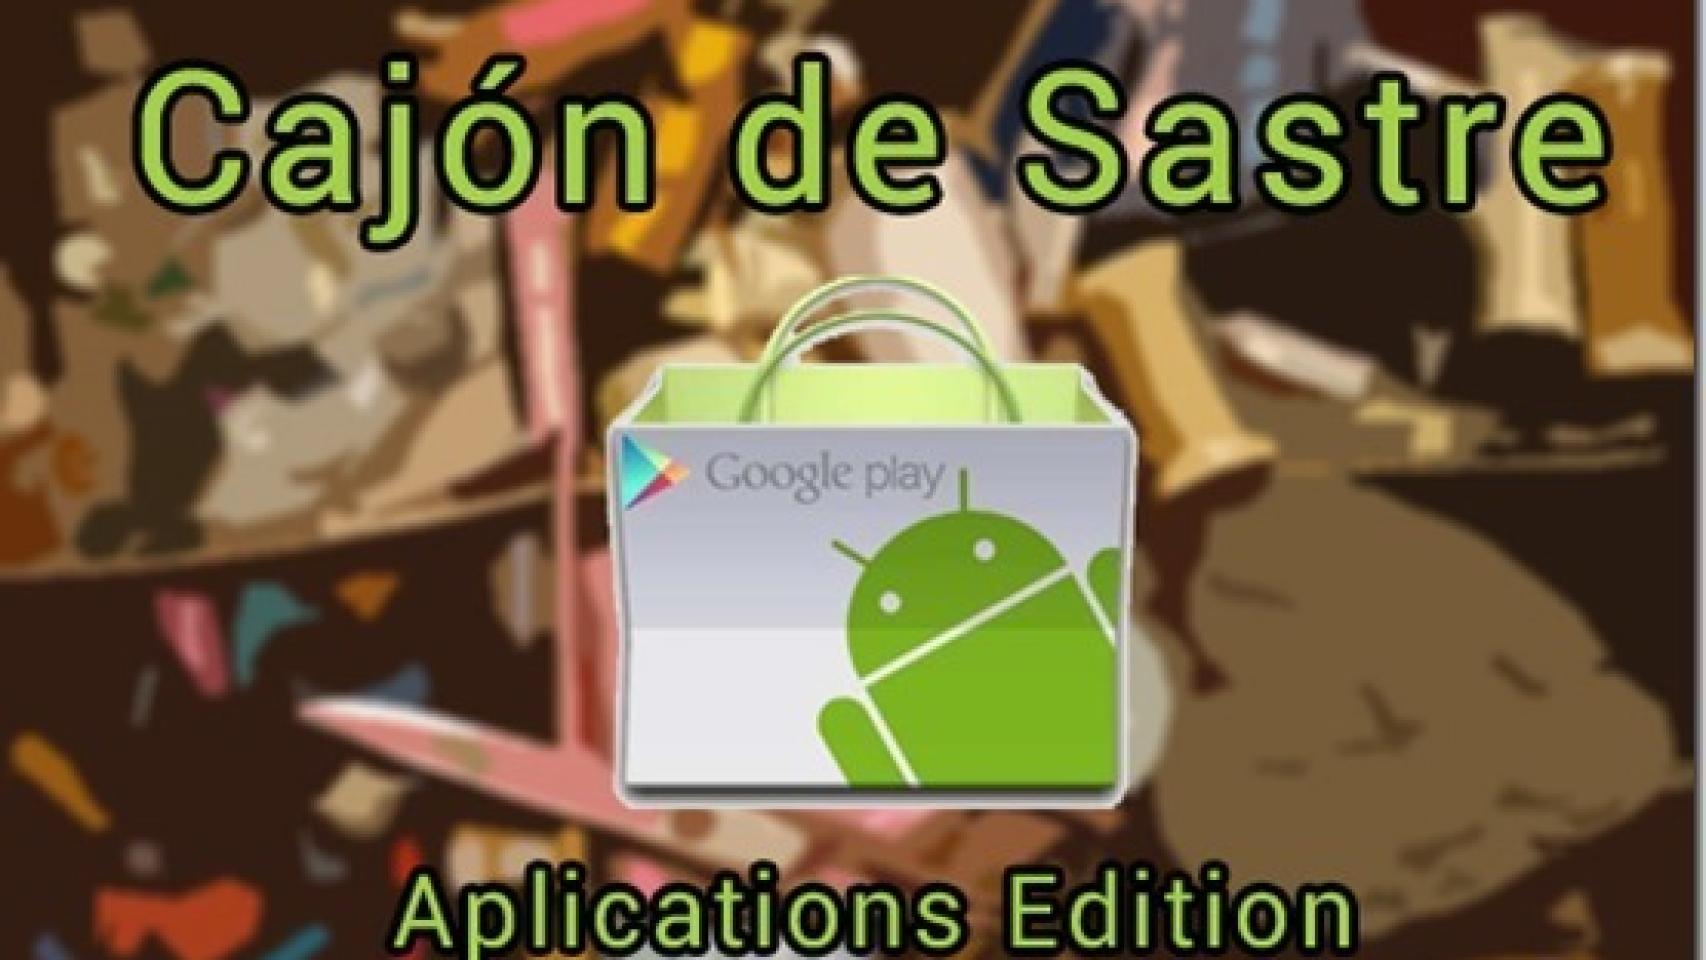 Cajón de Sastre II (Applications Edition)